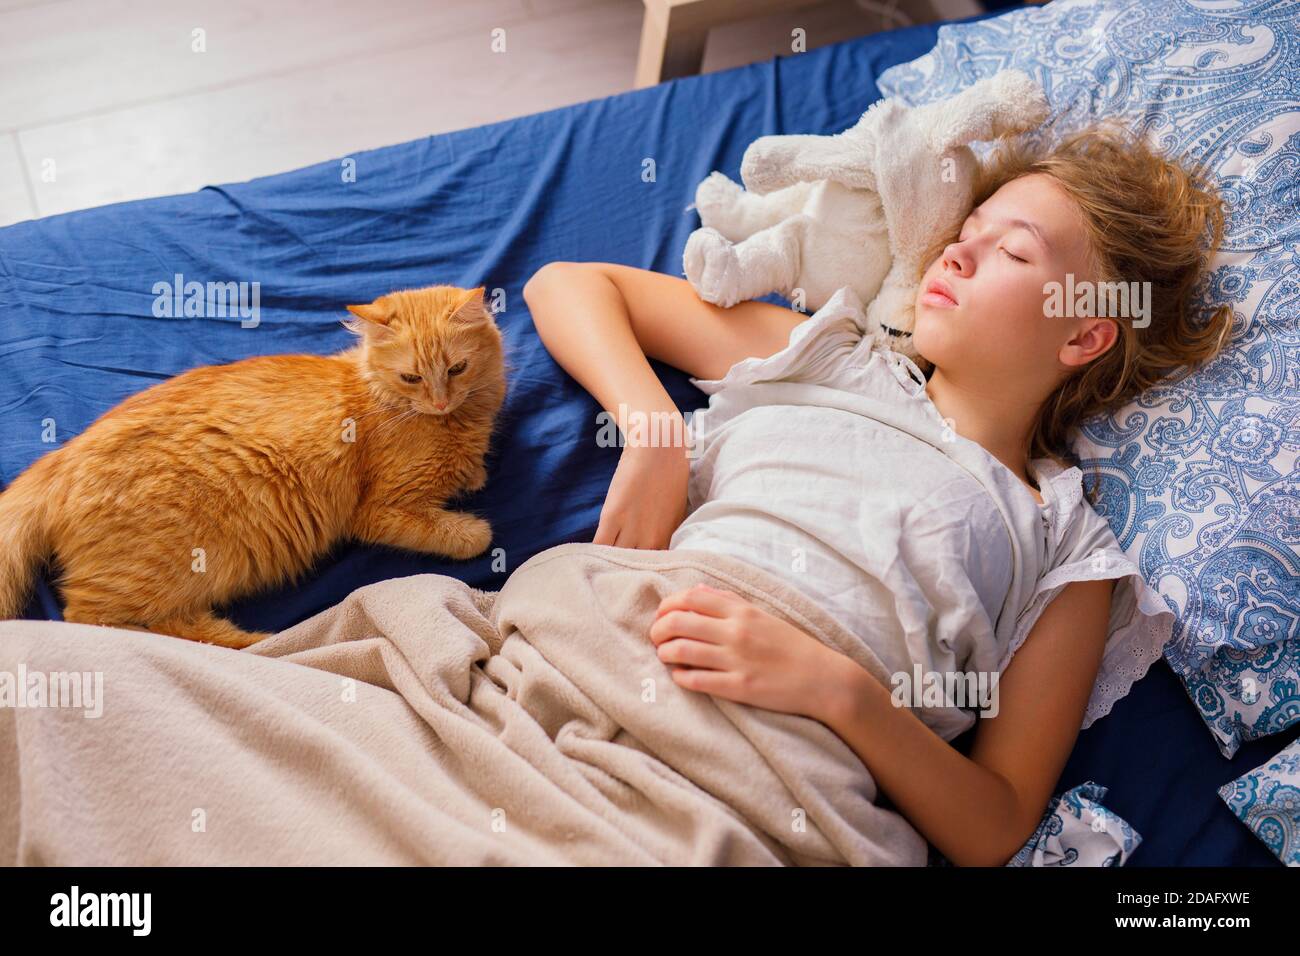 Ein Mädchen mit blonden Haaren schläft morgens im Bett neben einer flauschigen roten Katze. Weicher, freier Fokus. Stockfoto